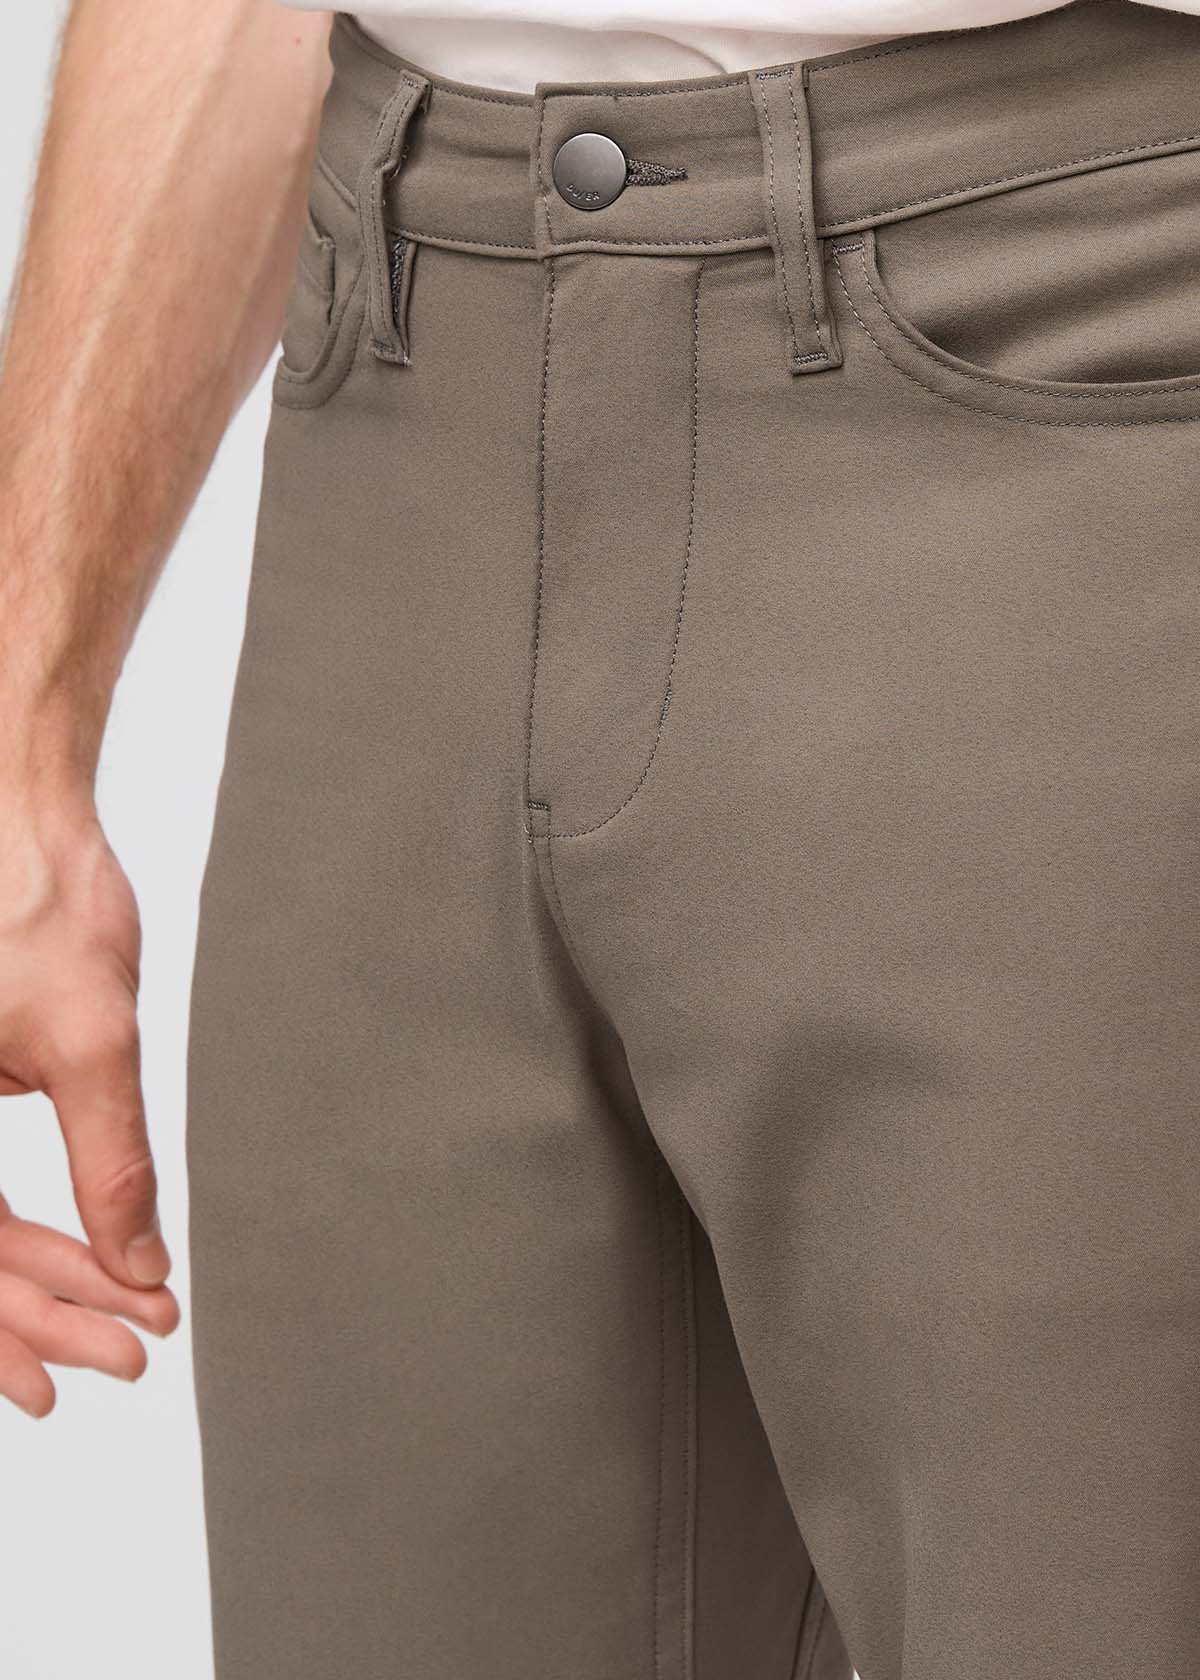 NuStretch Flex Trouser - Thyme